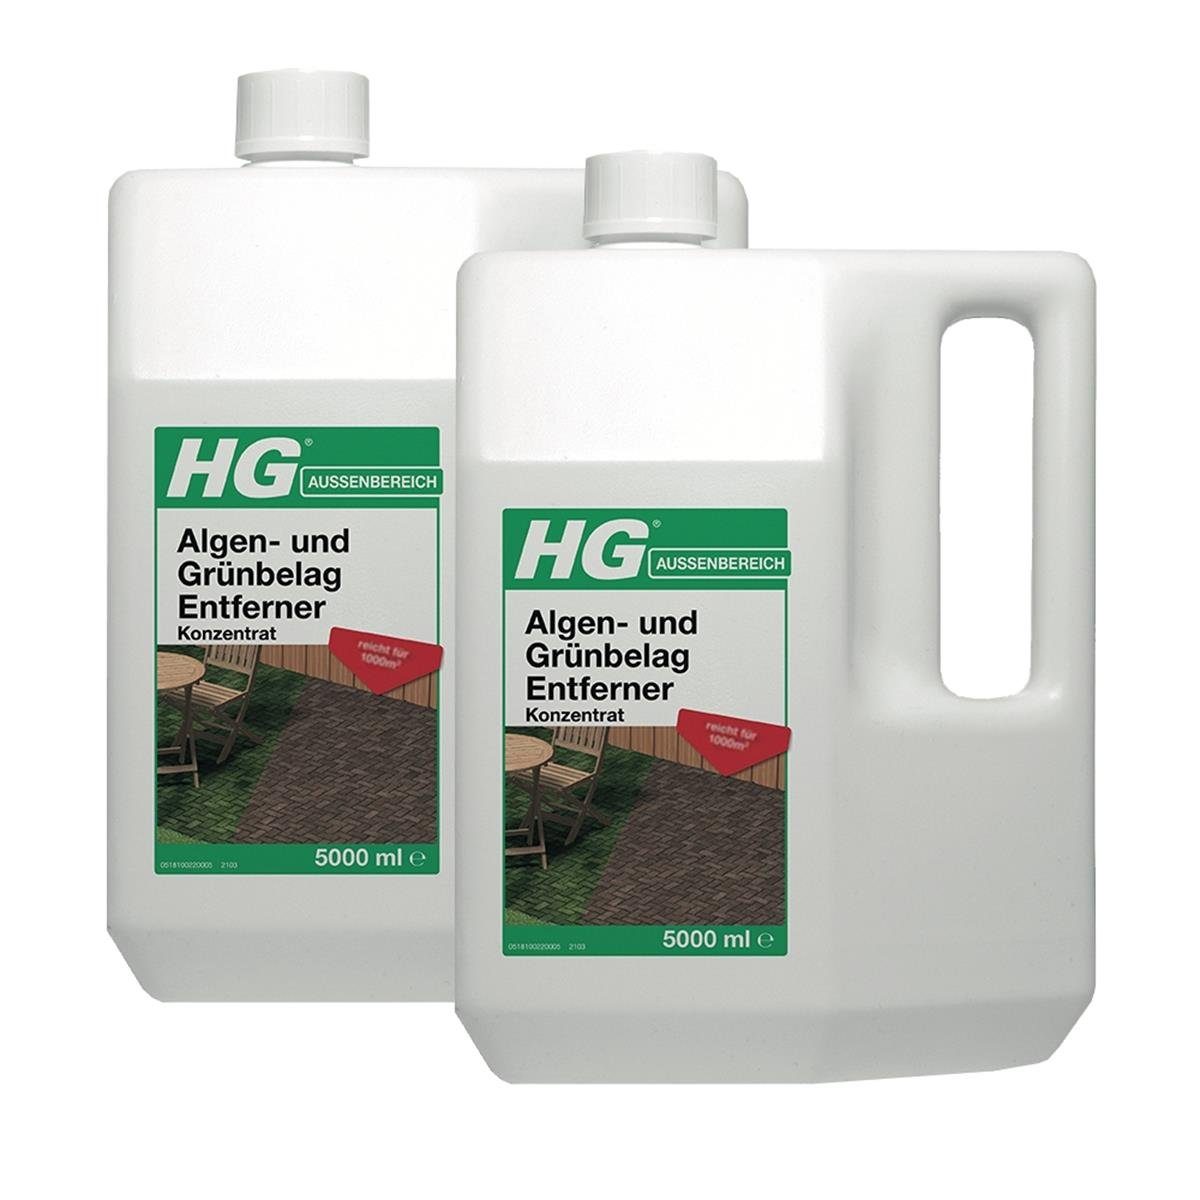 HG HG Algen- und Grünbelag Entferner Konzentrat 5L (2er Pack) Spezialwaschmittel